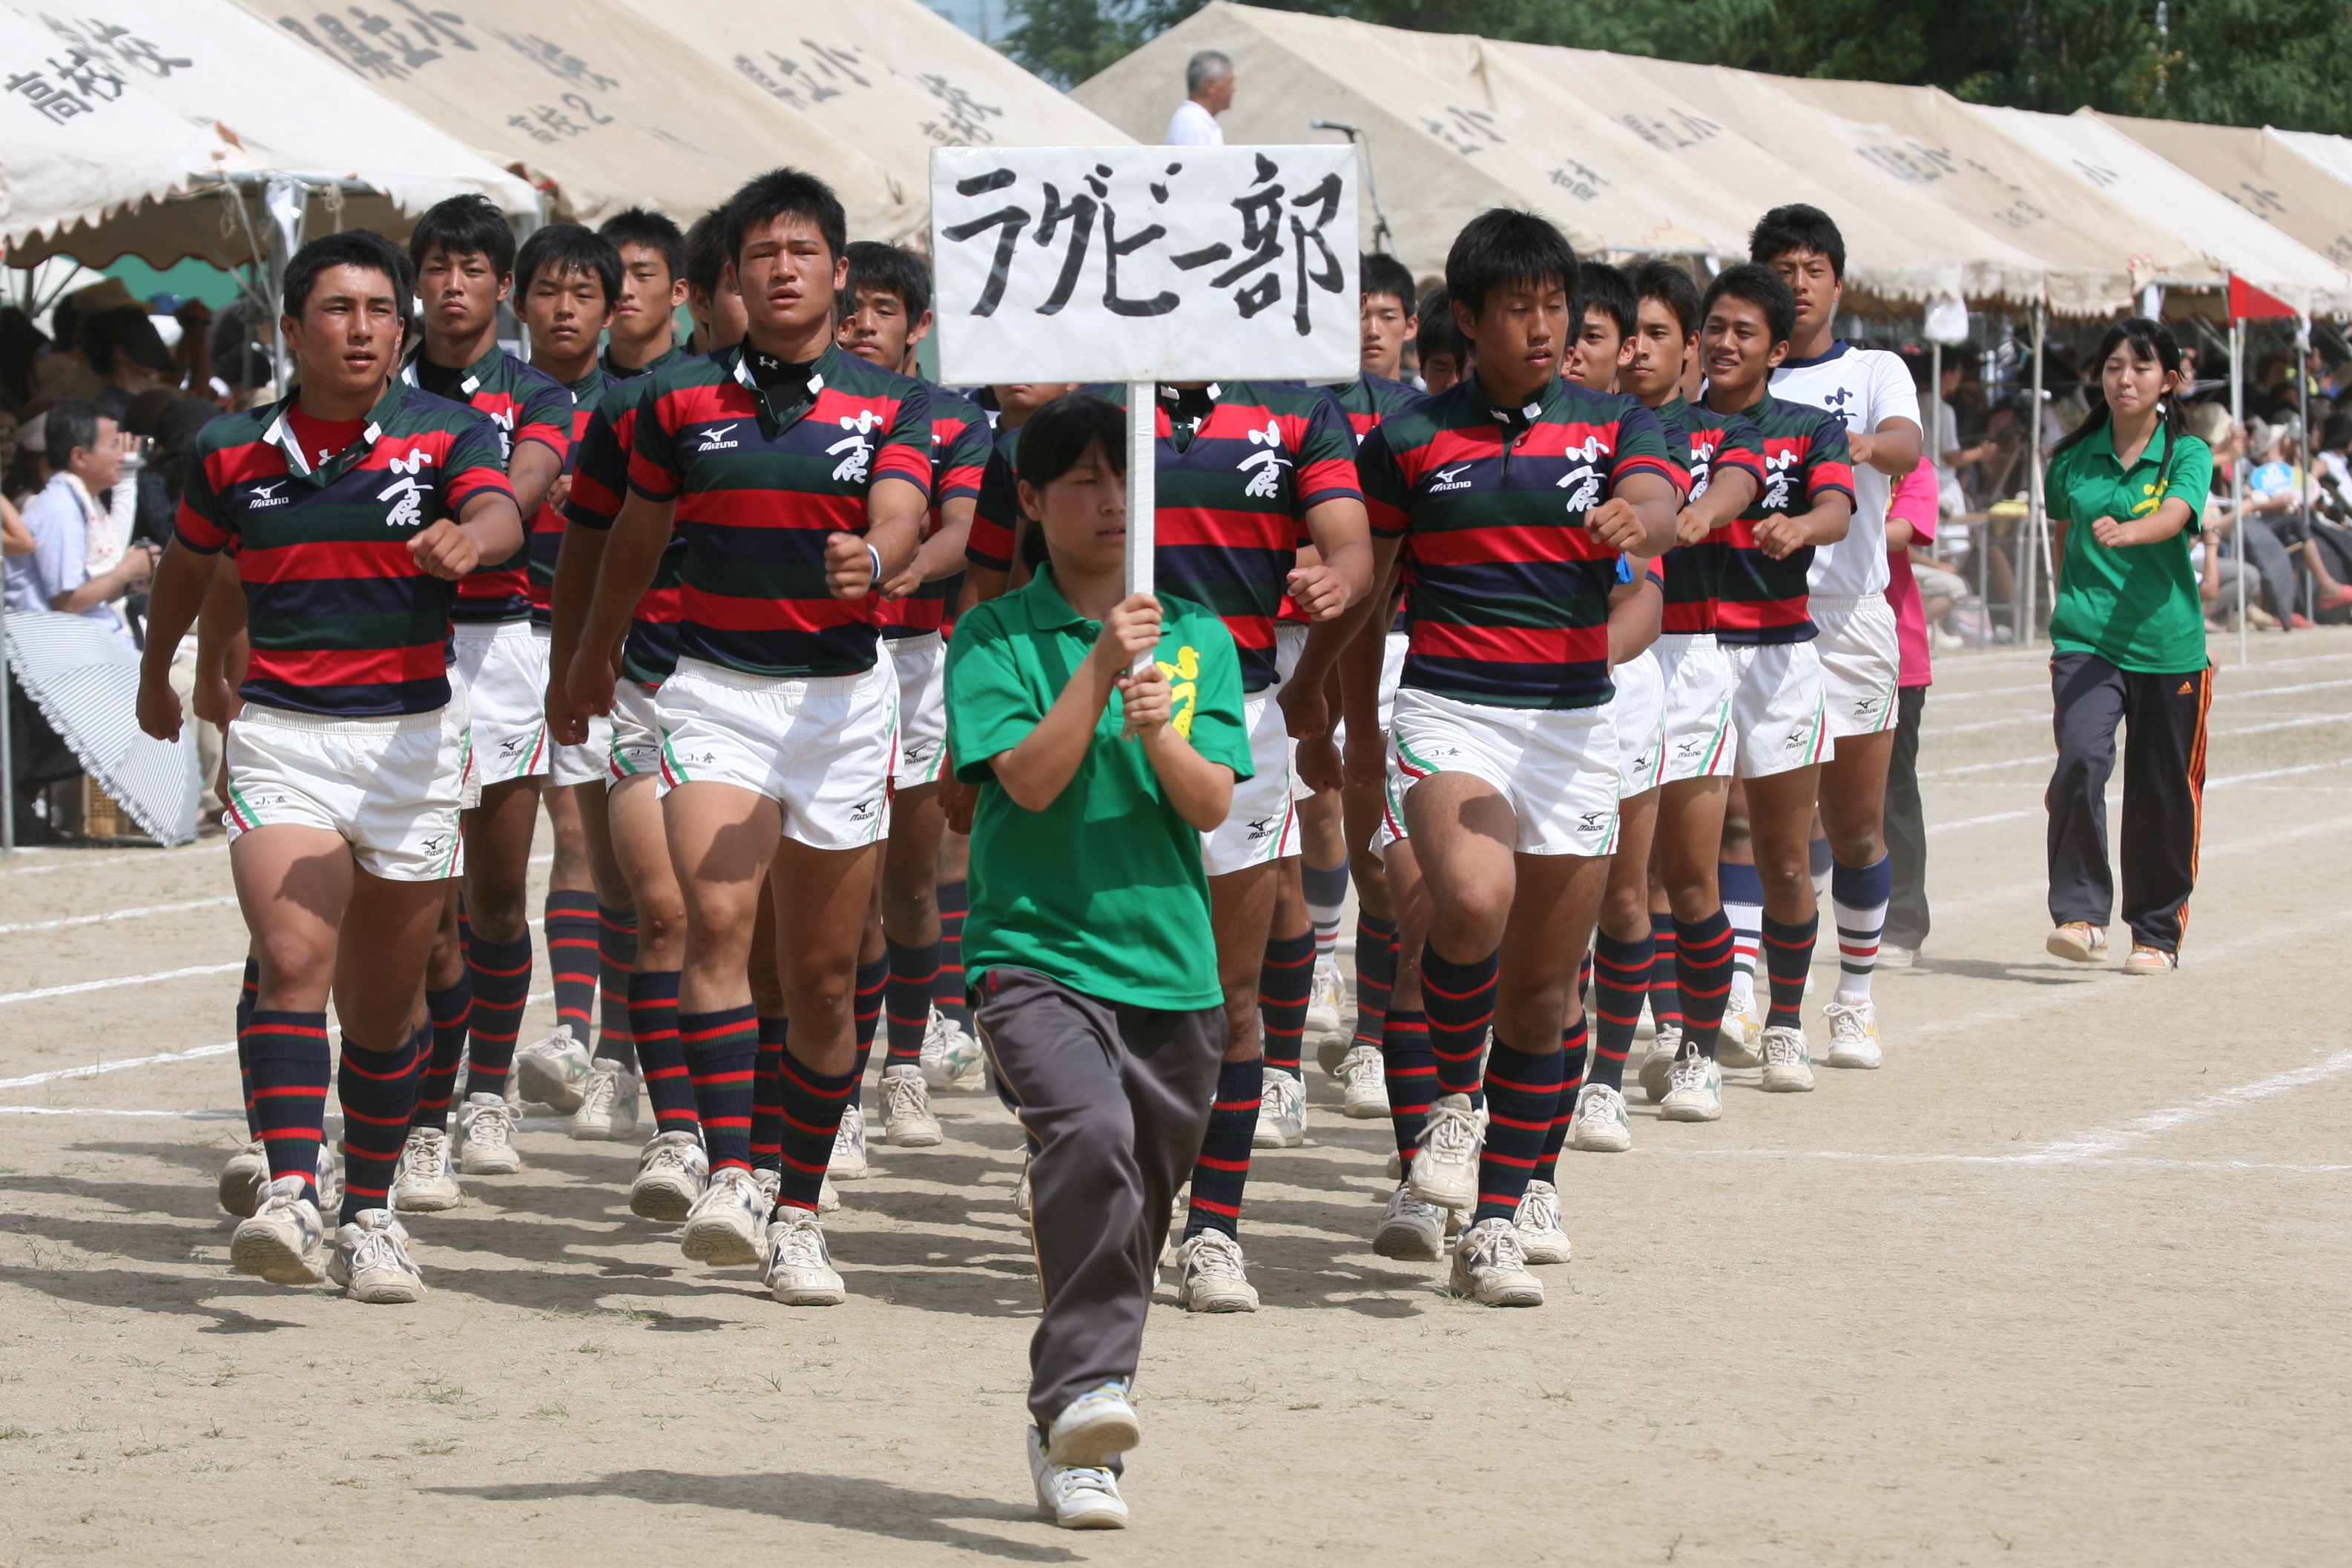 http://kokura-rugby.sakura.ne.jp/%E4%BD%93%E8%82%B2%E5%A4%A7%E4%BC%9A%EF%BC%91.JPG